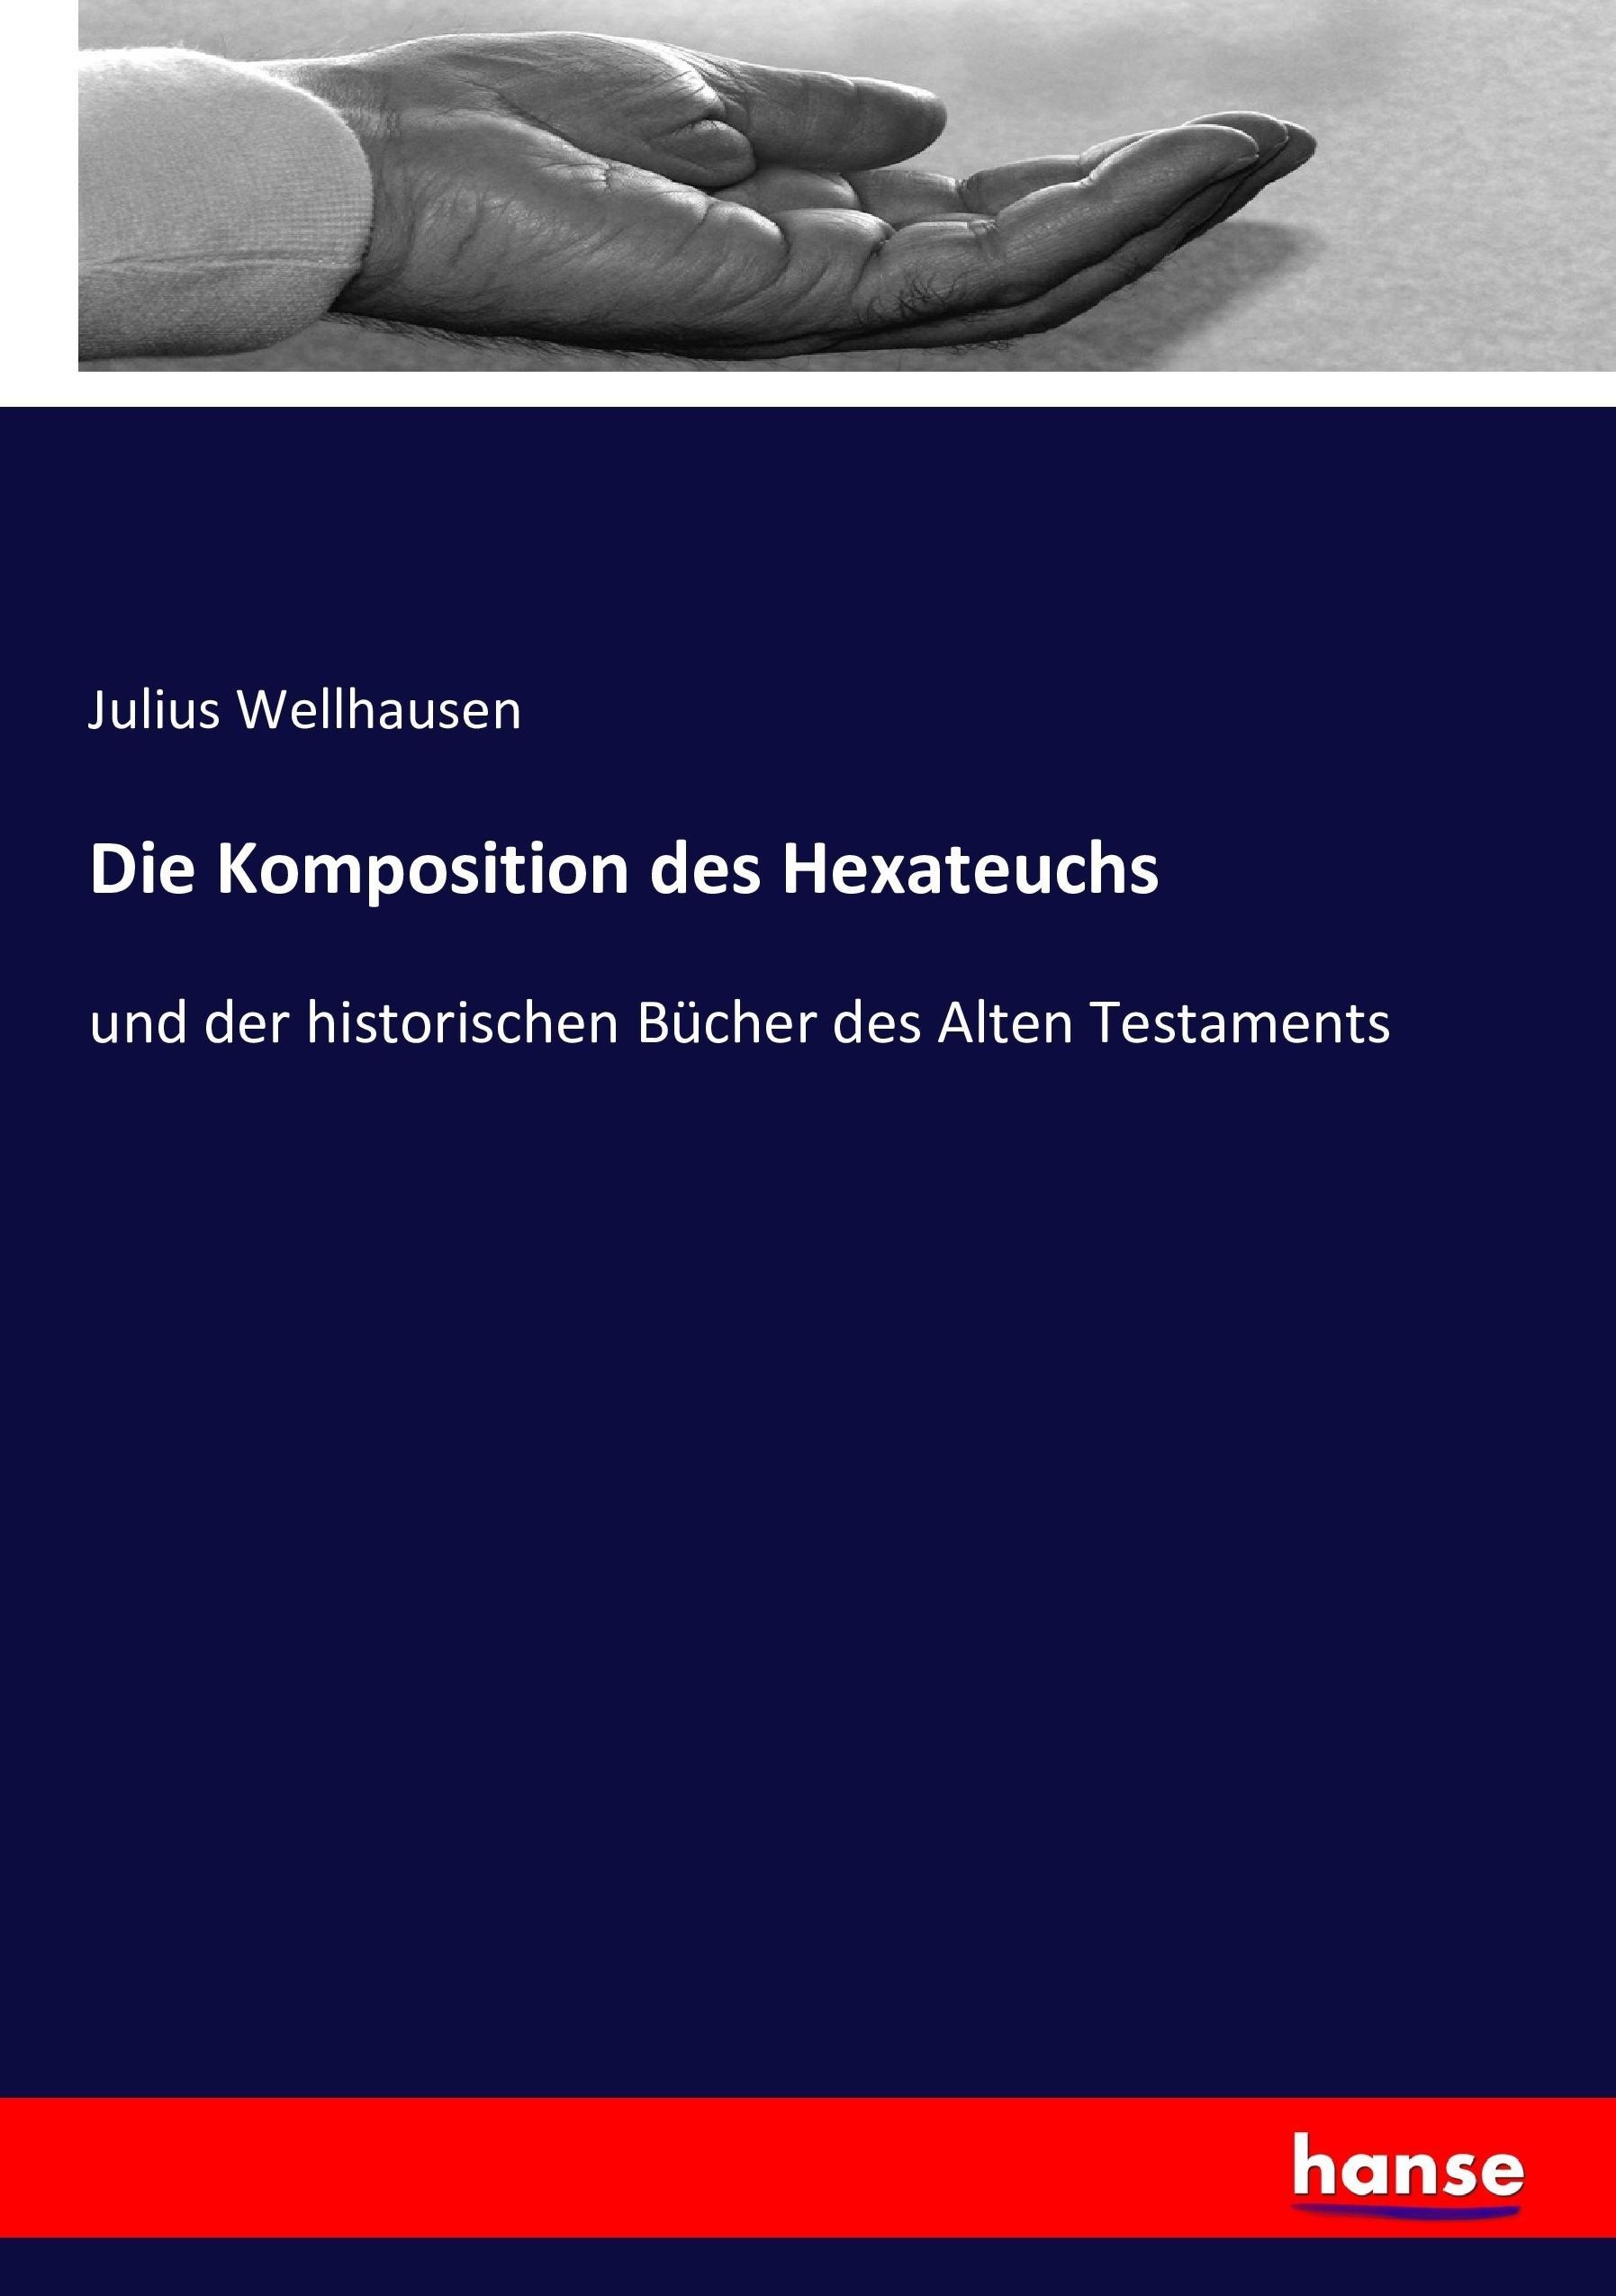 Die Komposition des Hexateuchs - Wellhausen, Julius